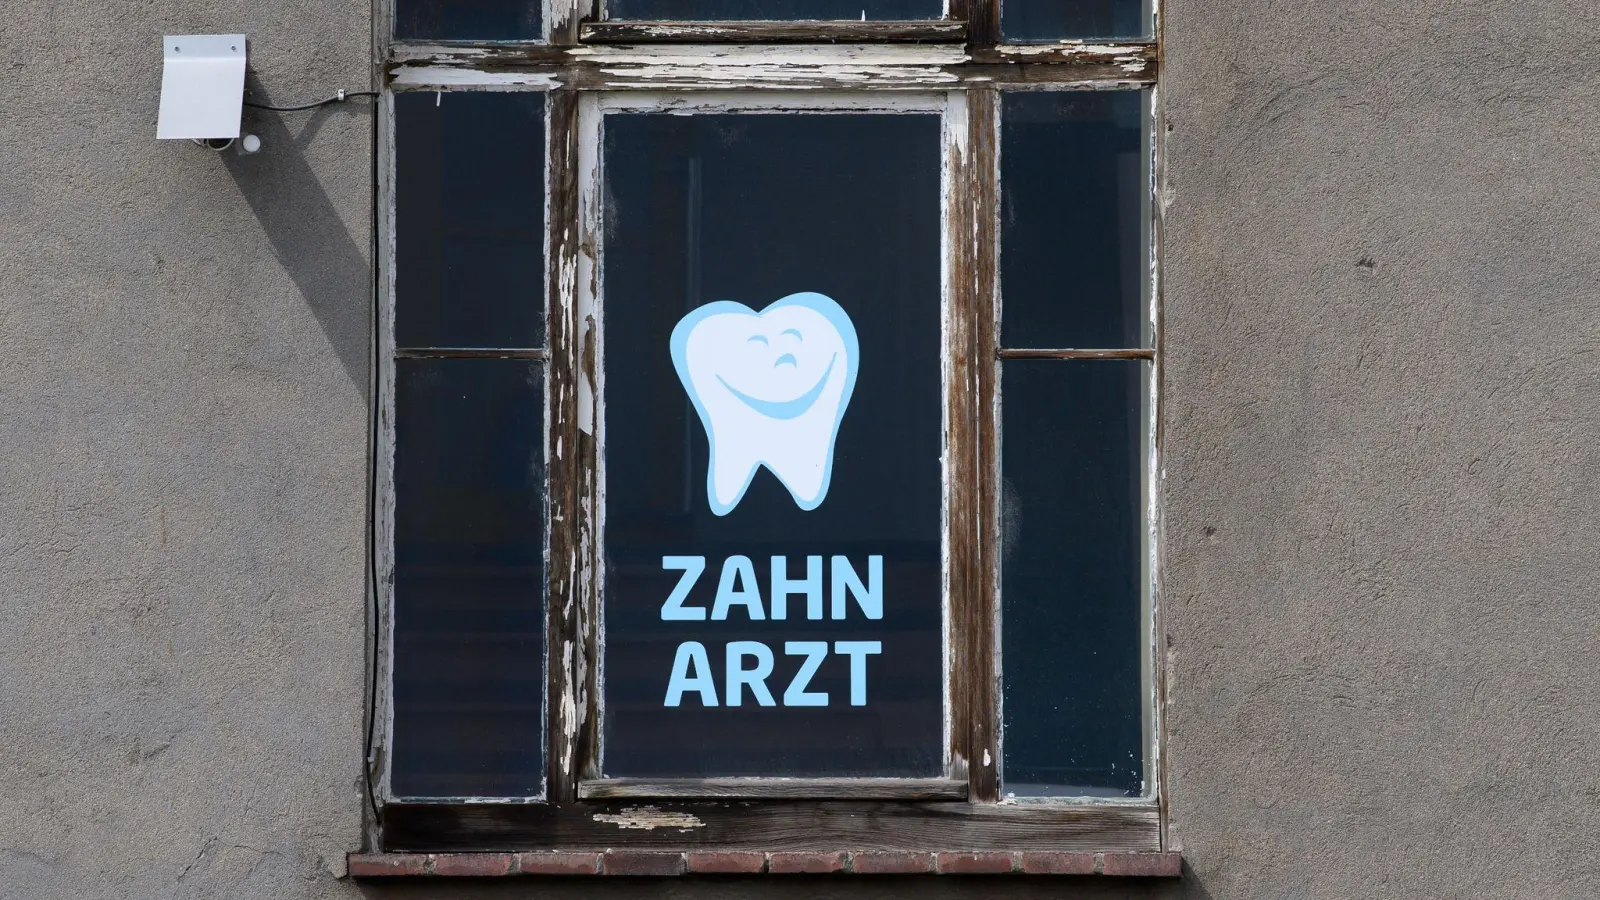 Zahnarzt steht an einem Fenster eines Hauses geschrieben, in dem sich eine Zahnarztpraxis befindet. (Foto: Robert Michael/dpa-Zentralbild/dpa/Symbolbild)